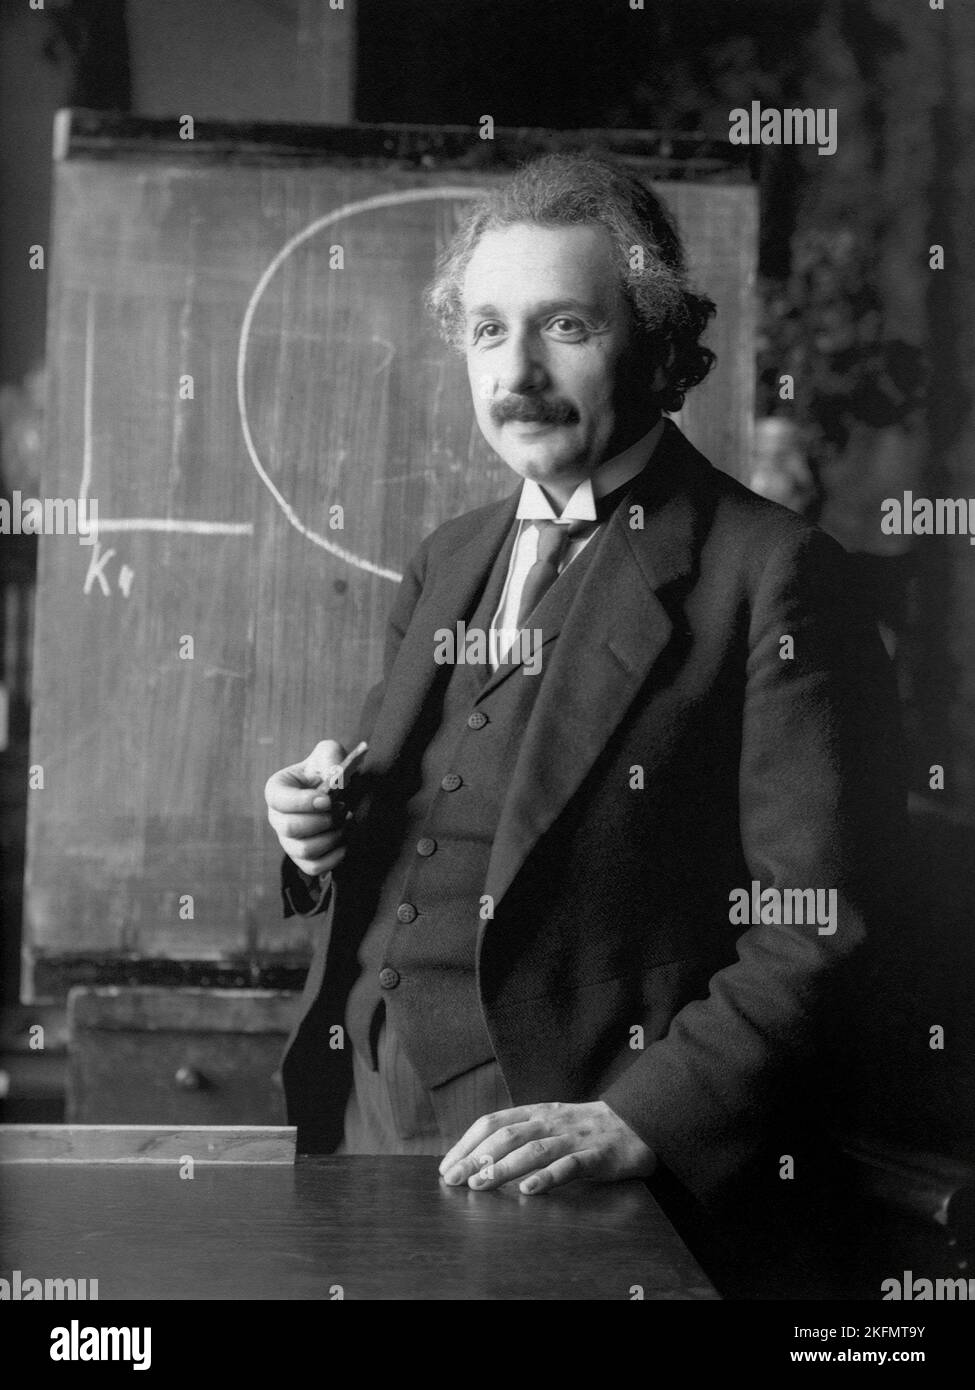 WIEN, ÖSTERREICH - 1921 - Albert Einstein während eines Vortrags in Wien Österreich - Foto: Geopix/F Schmutzer Stockfoto